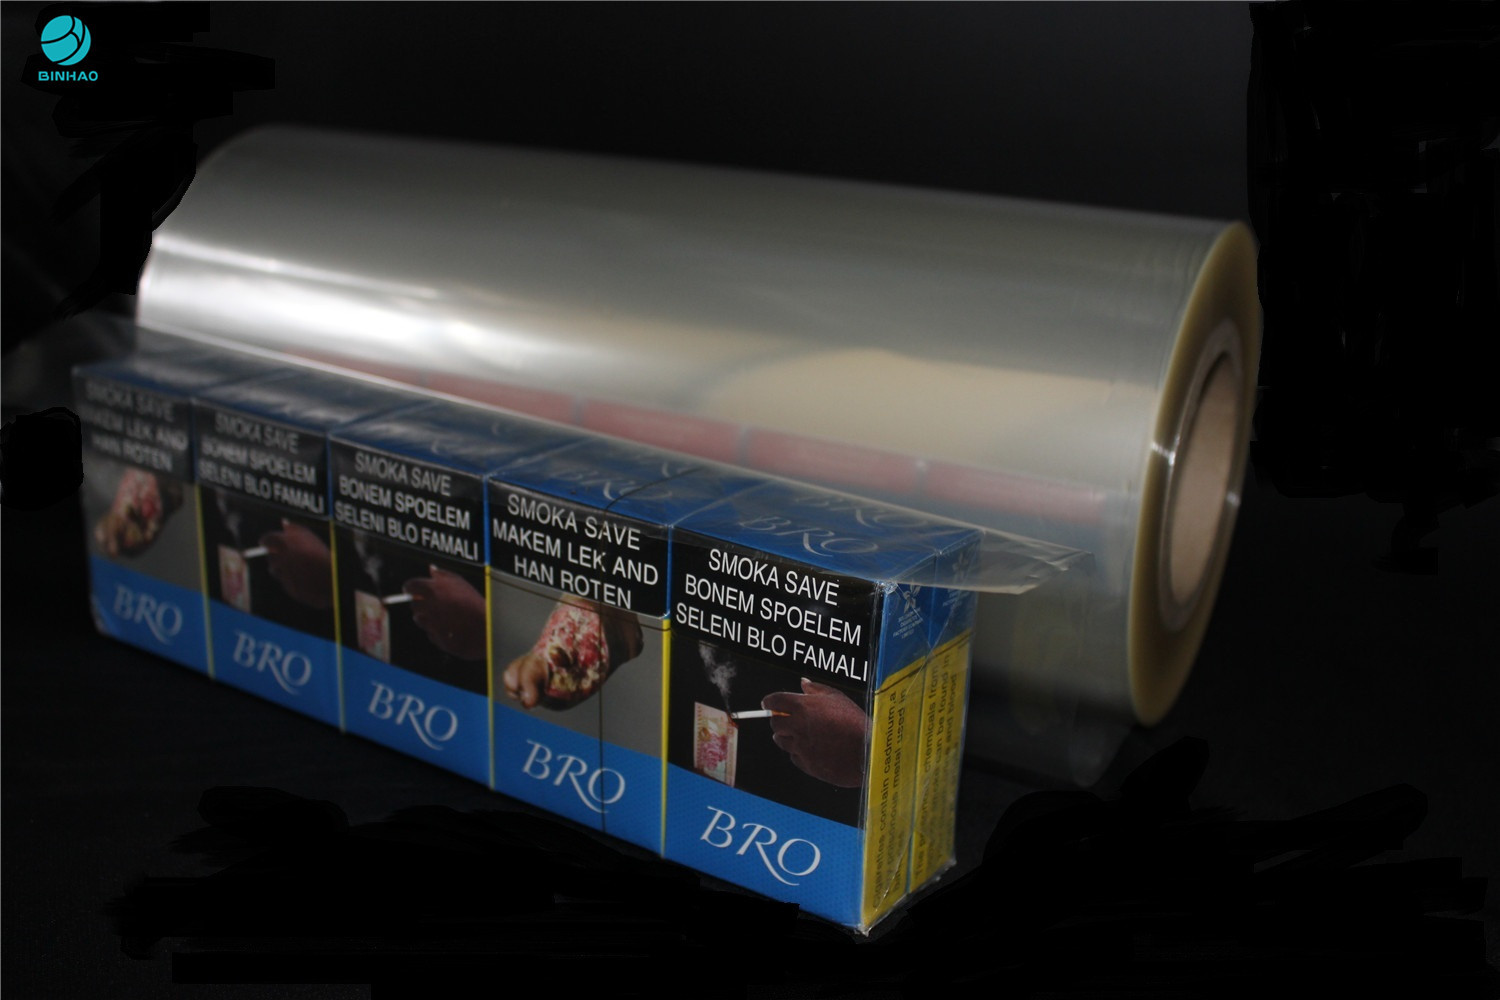 タバコ箱の食品包装ポリ塩化ビニールの包装のフィルムのための360mmのポリ塩化ビニールのフィルム